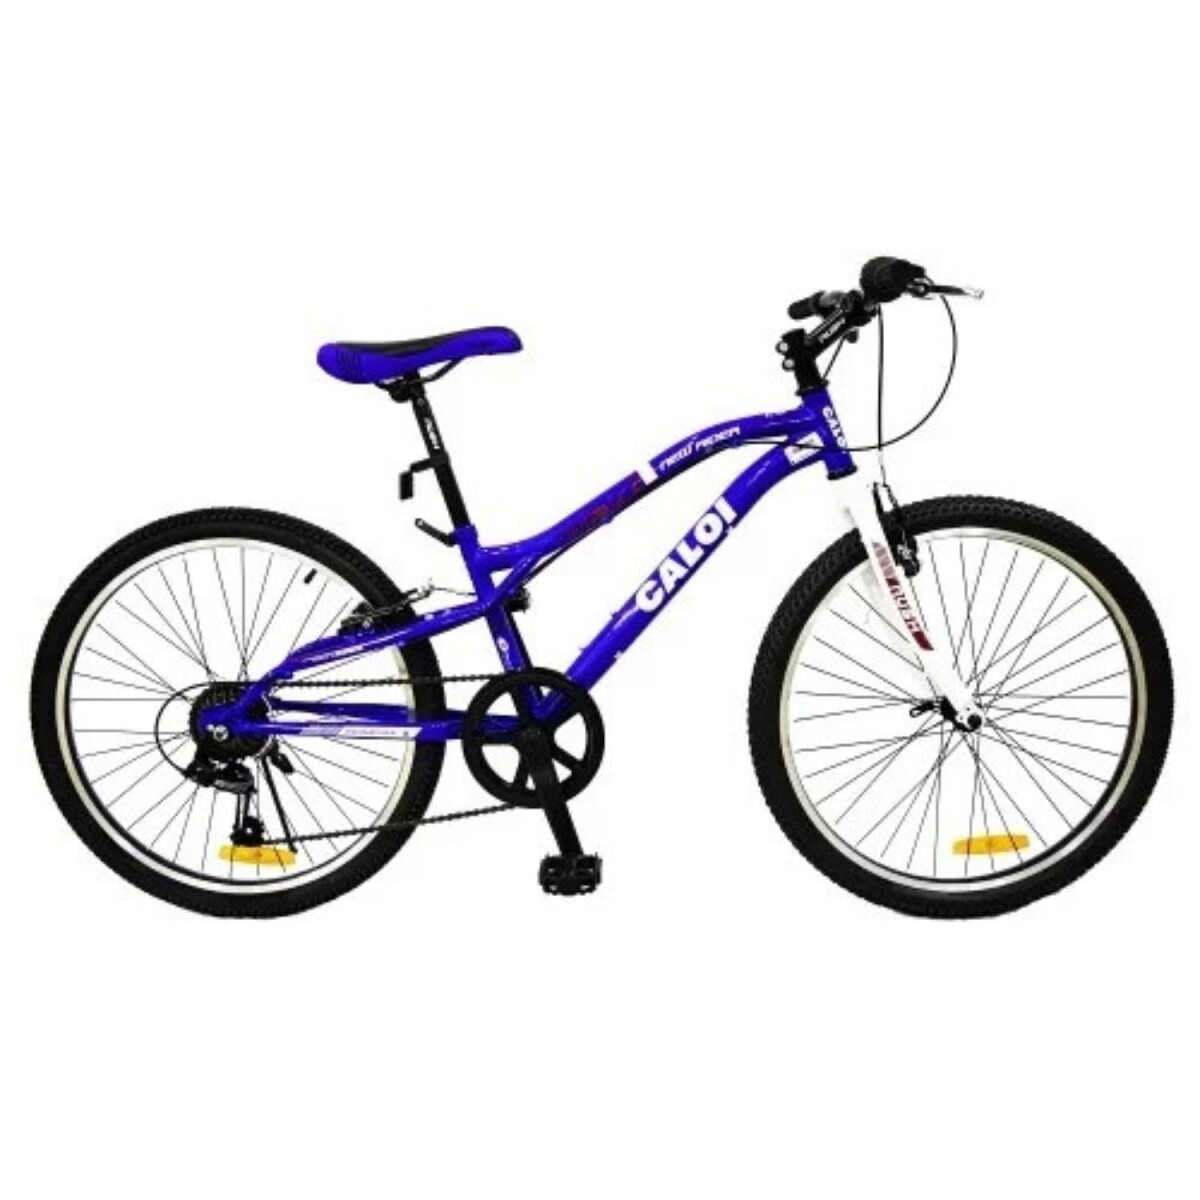 Bicicleta Caloi New Rider 24" 7 vel. Azul 